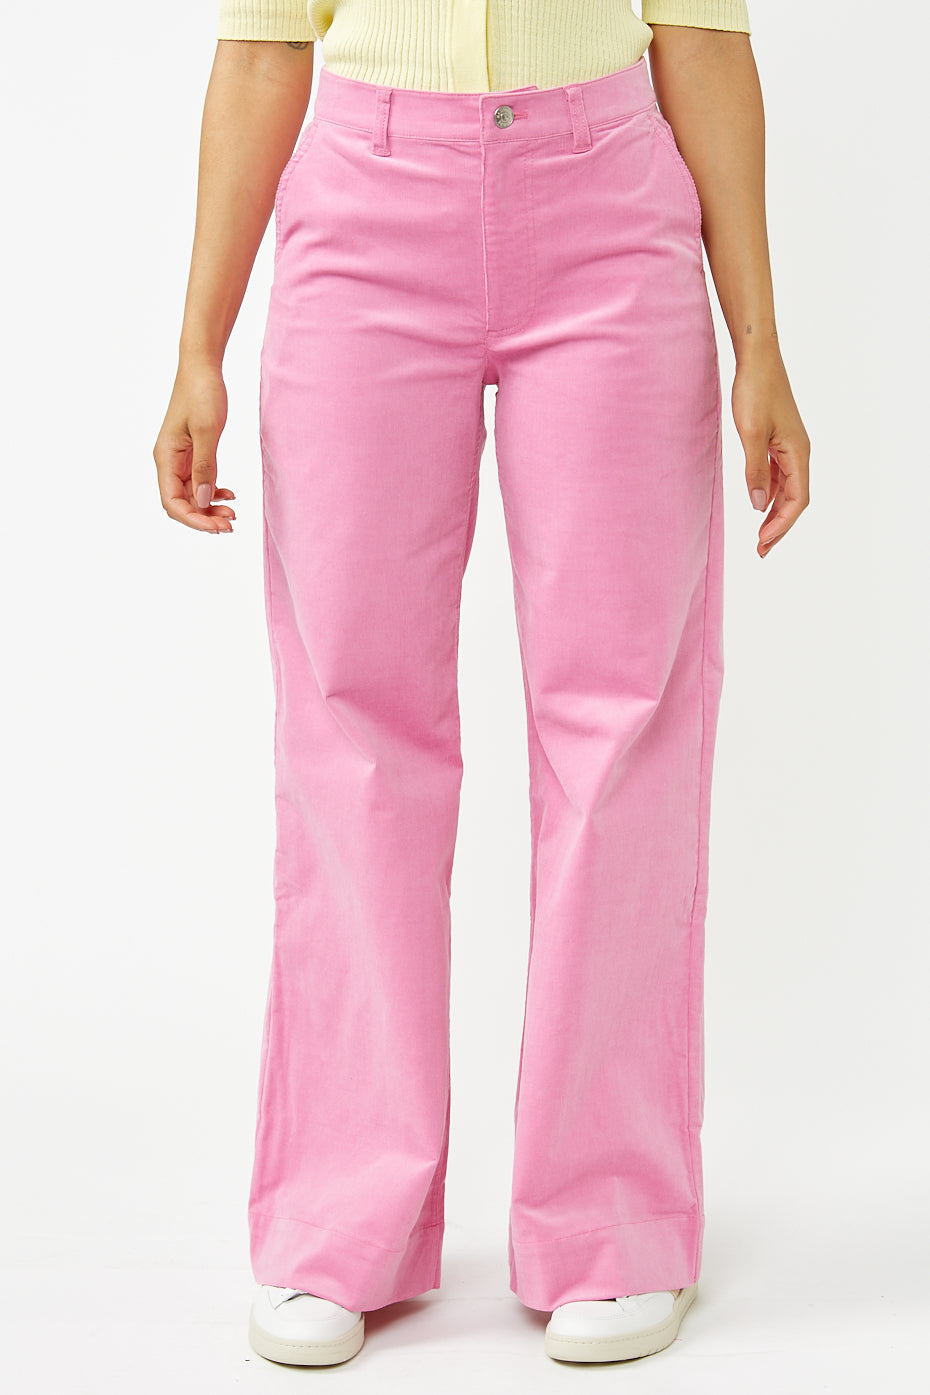 Bubble Gum Pink Allie Trousers